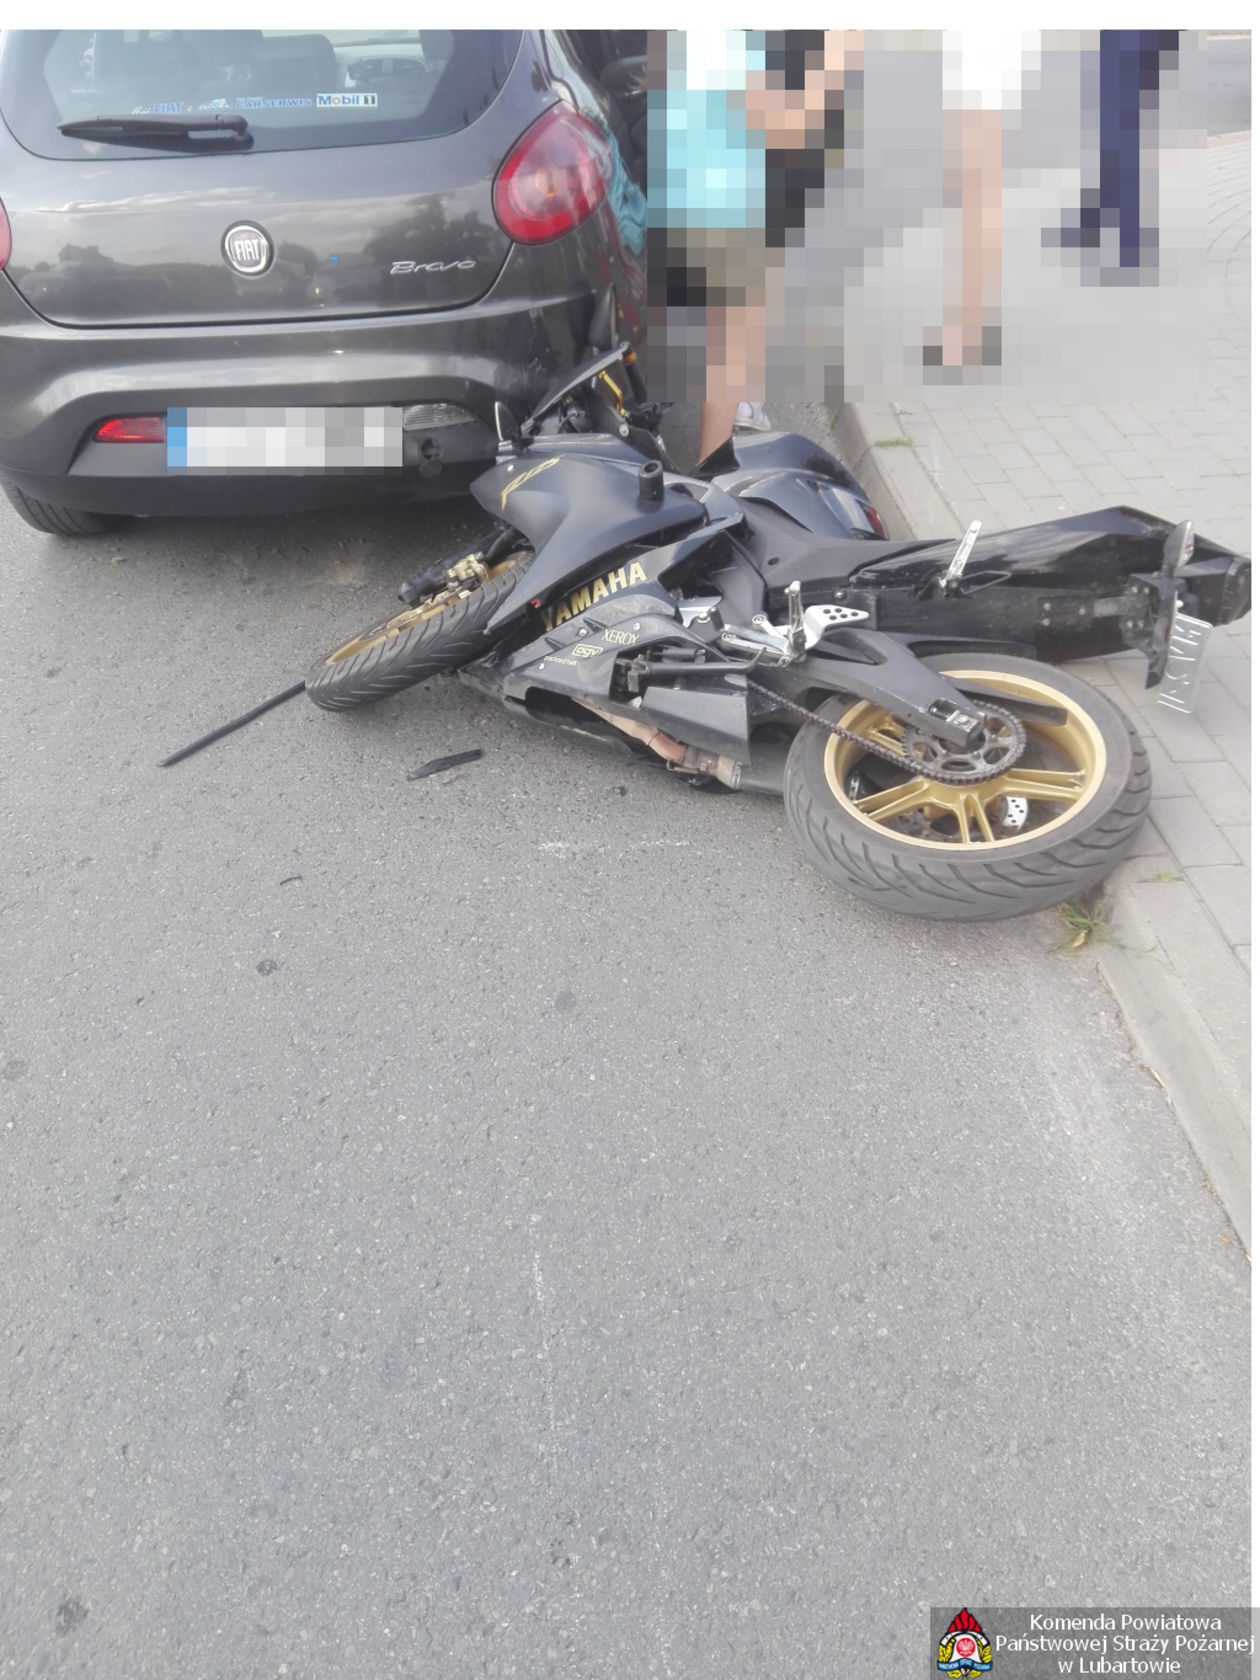  <p>Wypadek w Lisowie</p>